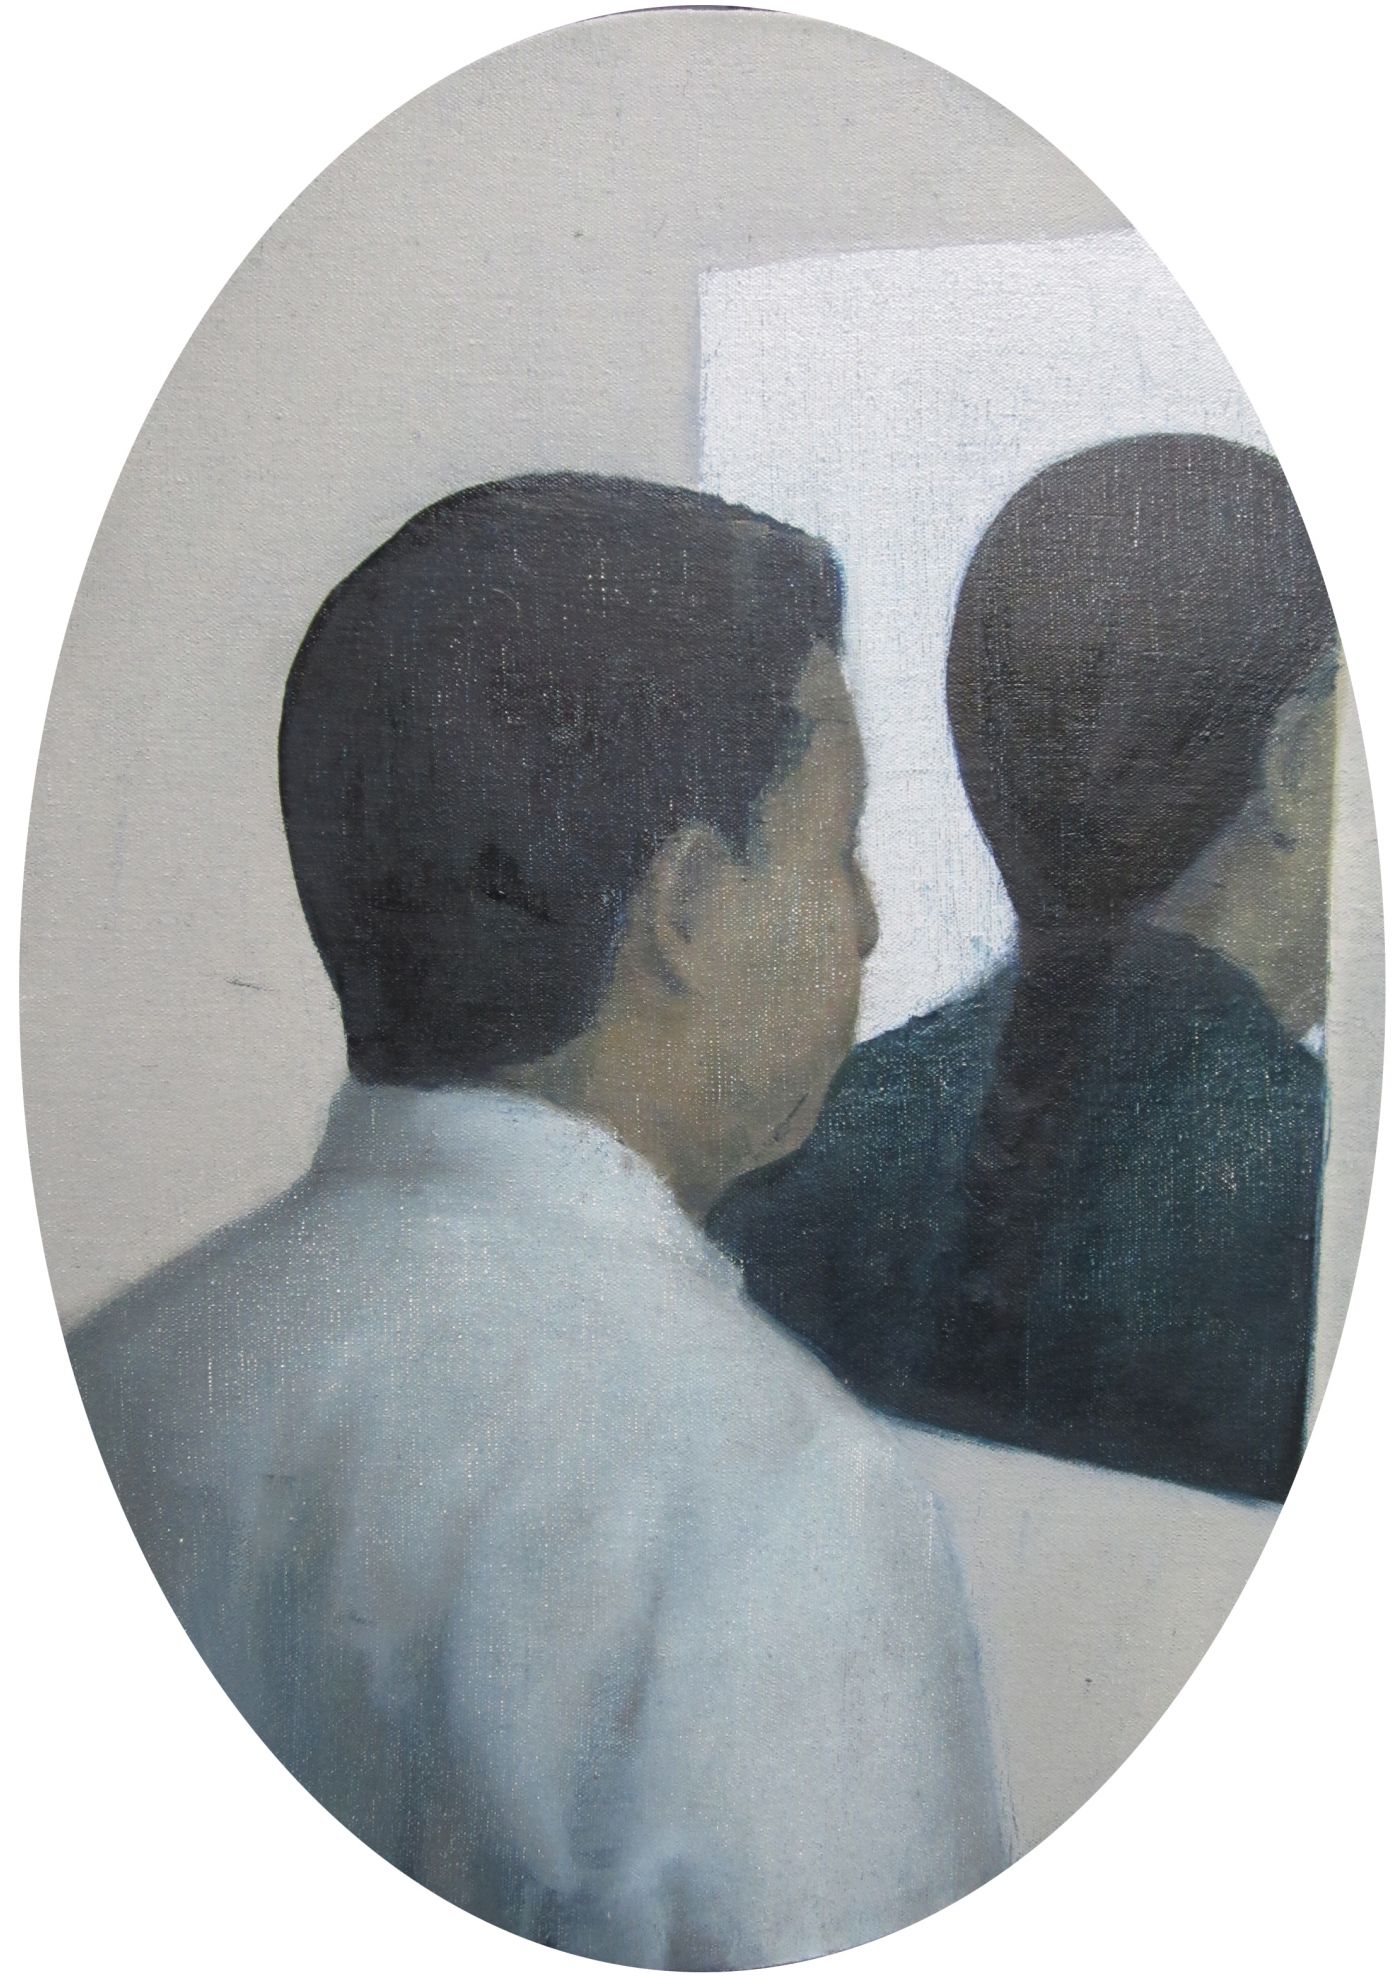 翟倞 Zhai Liang 我是你的朋友 我是你的敌人 I am your Friend your I am Enemy 布面油画 Oil on Canvas50 5 35 5cm 2011